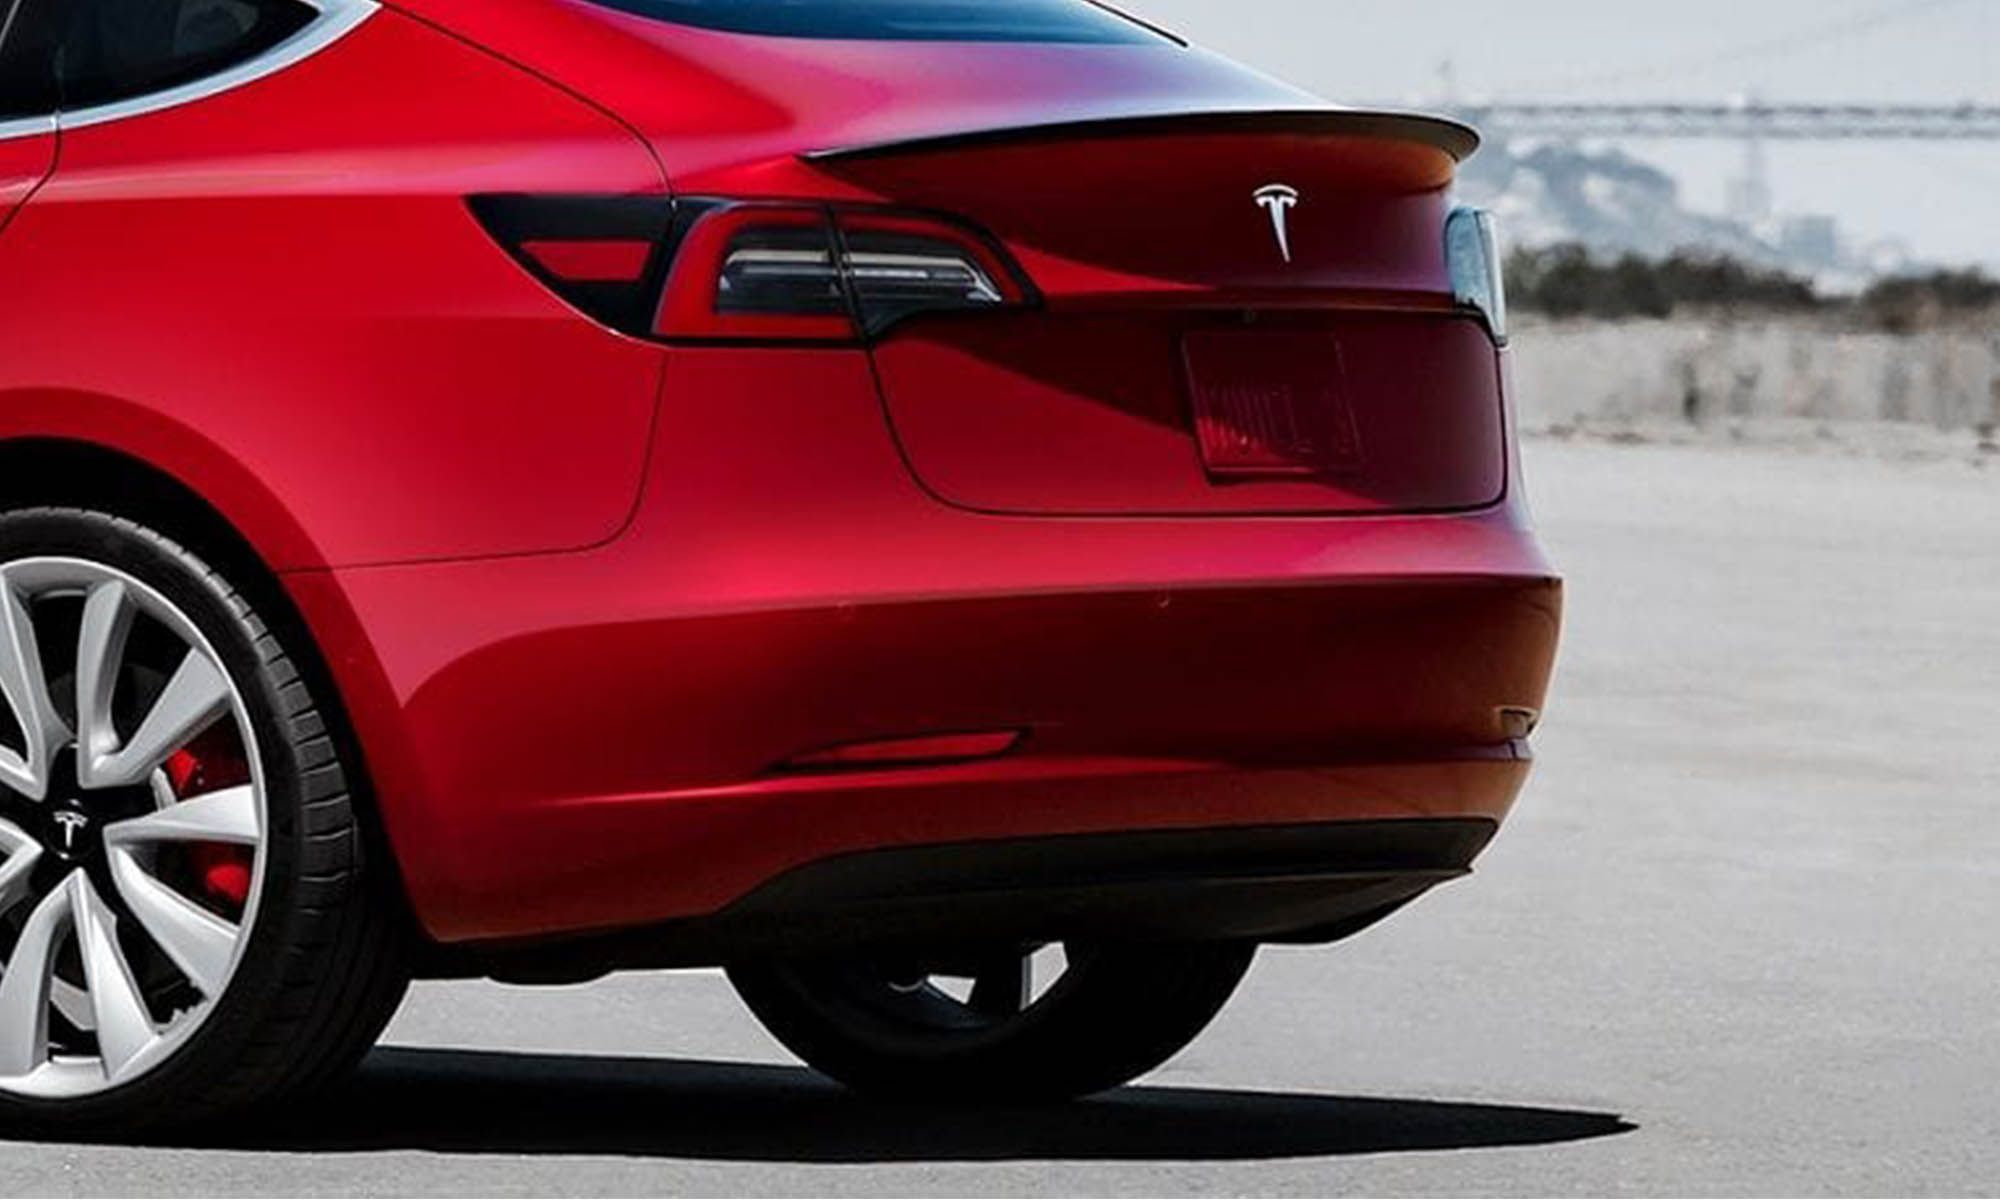 Tesla demuestra que lo suyo es el software, sustituyendo la función de los sensores de aparcamiento por las cámaras.